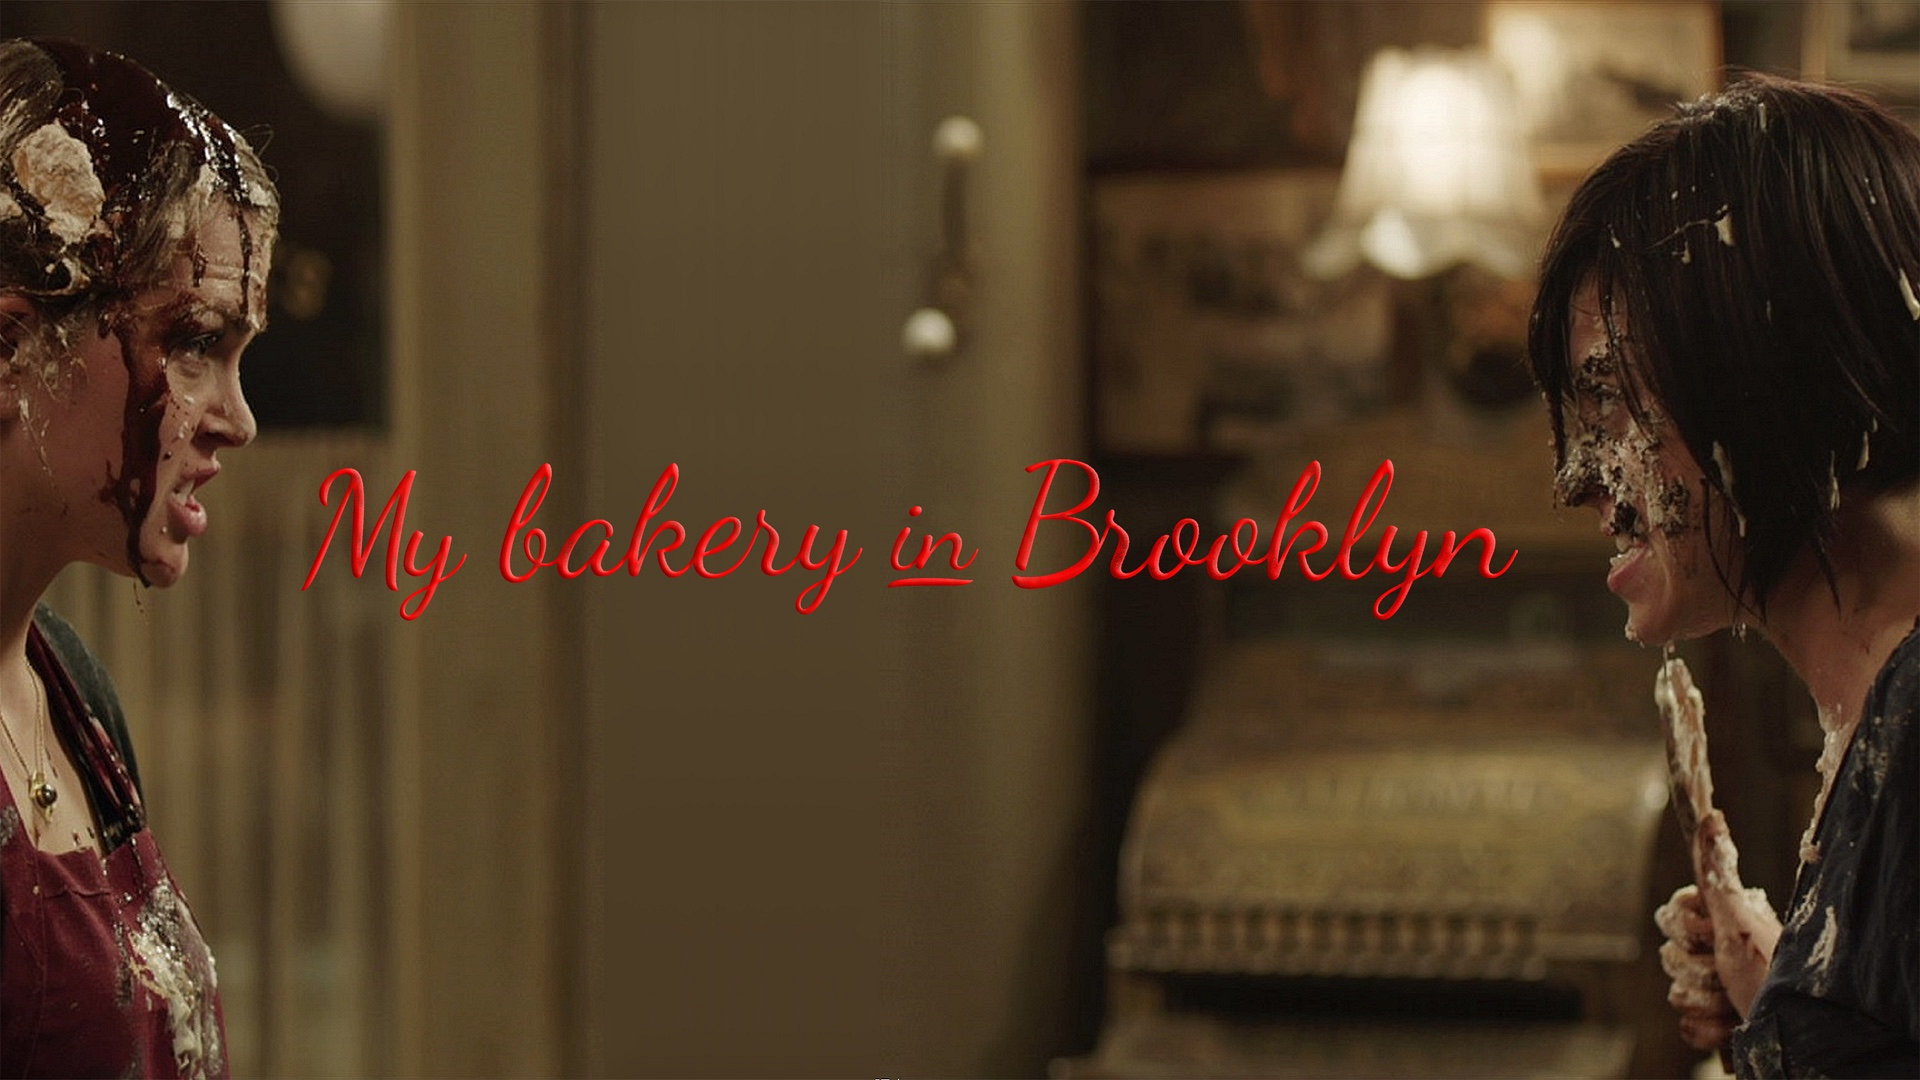 My Bakery In Brooklyn